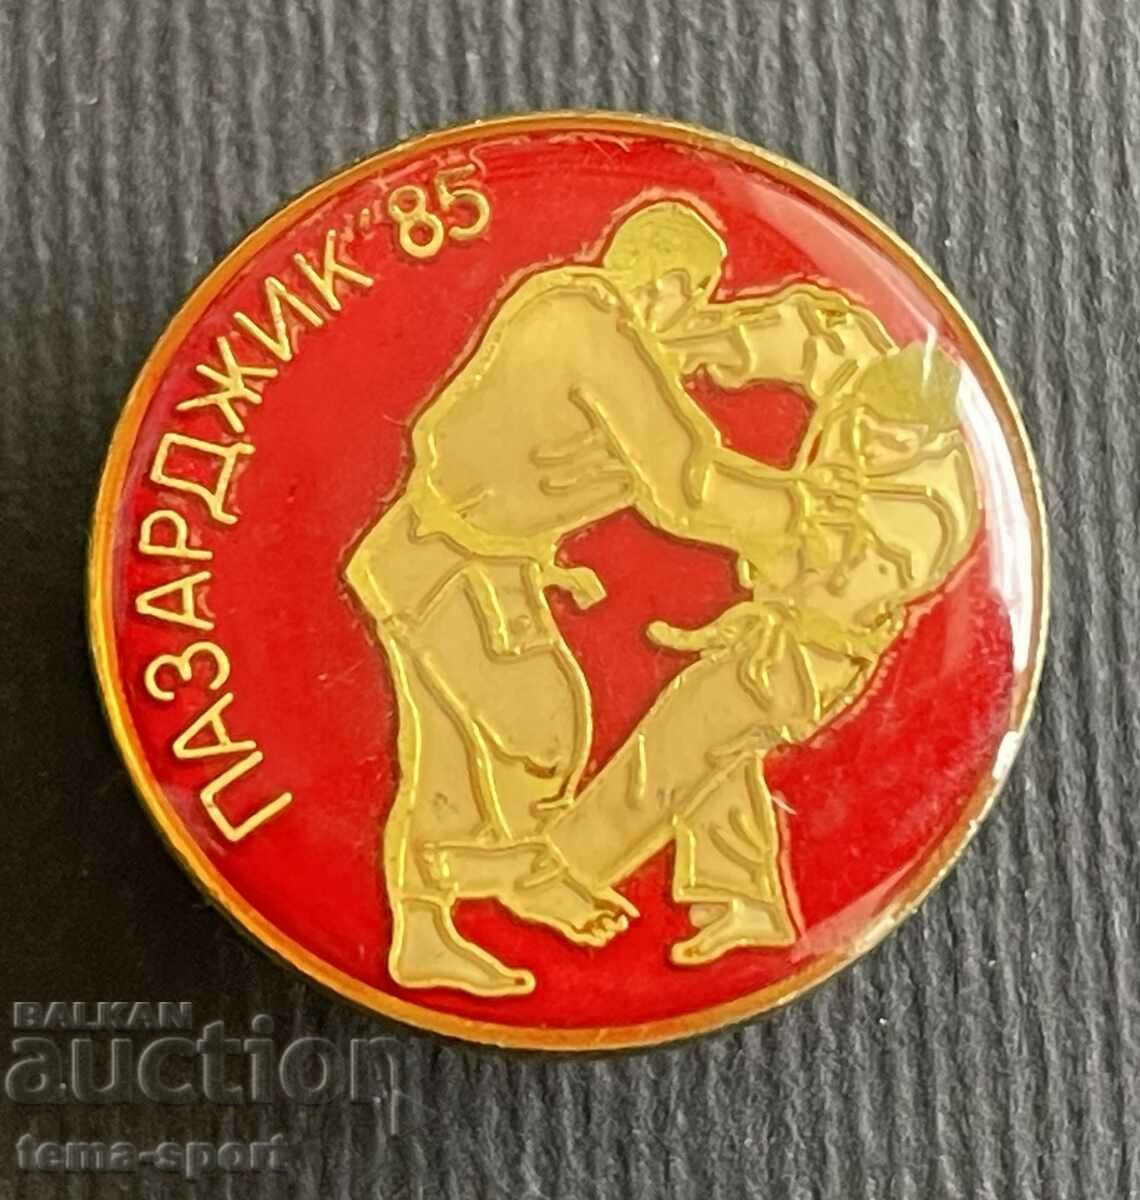 339 Βουλγαρία υπογραφή τουρνουά Karate Pazardzhik 1985.